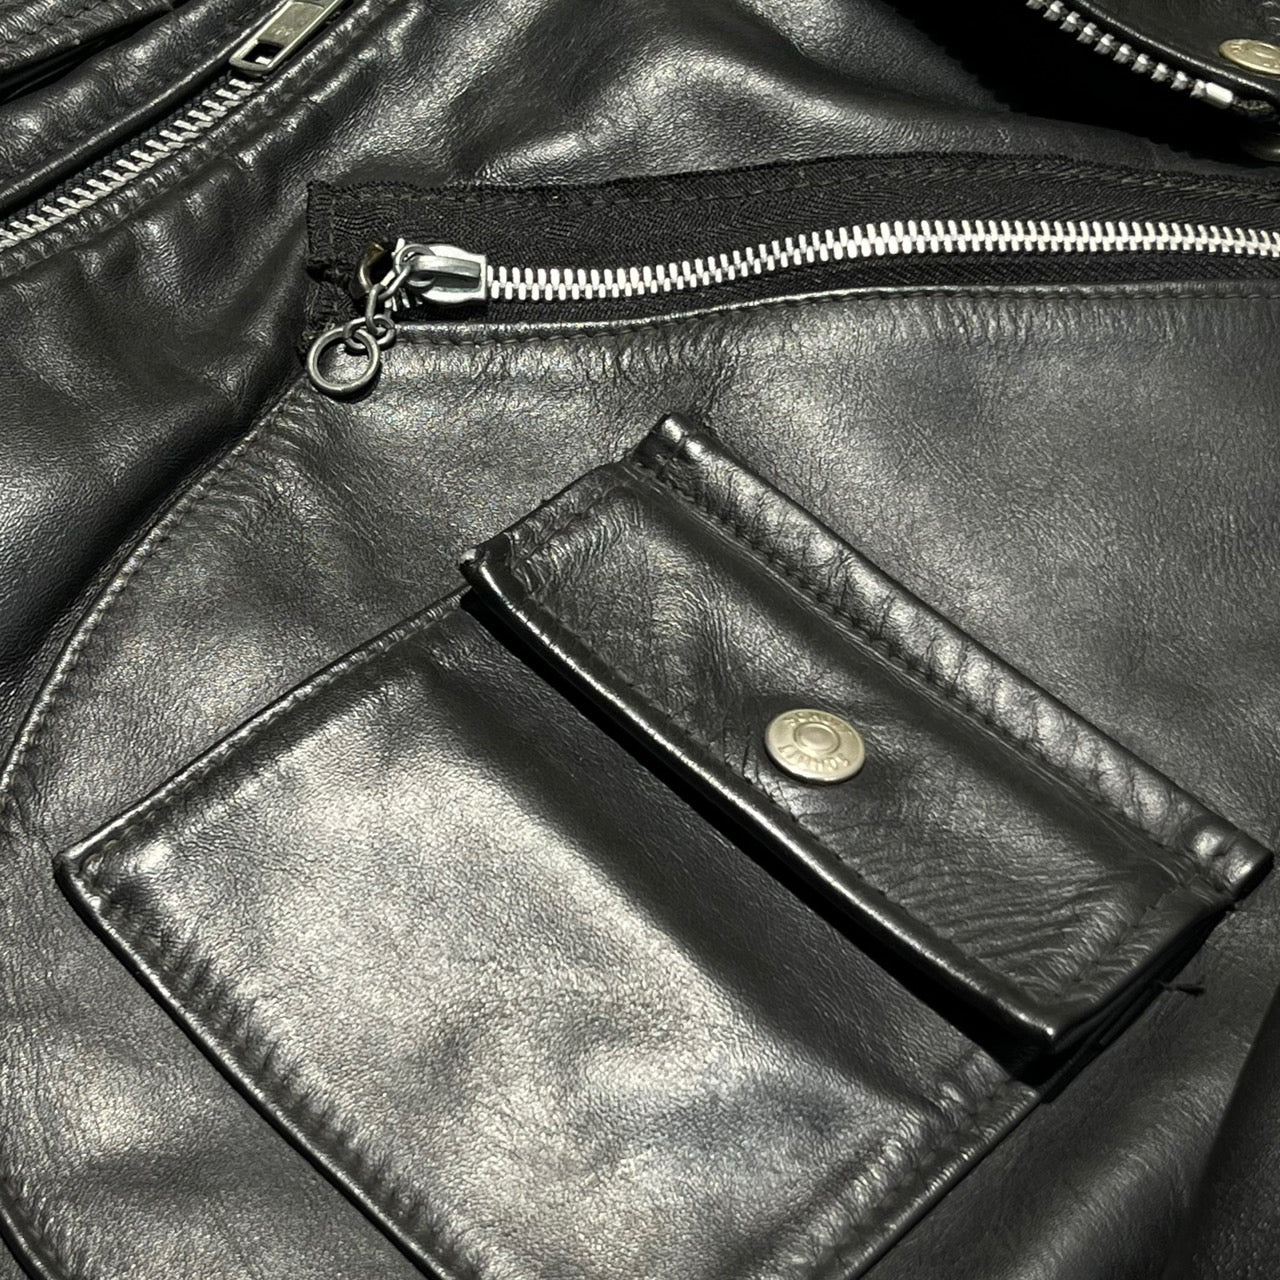 SCHOTT(ショット)希少モデル 80~90's double leather jacket/ダブルレザージャケット lot 1025 36(Sサイズ程度) ブラック バイカータグ後期 ライダースジャケット